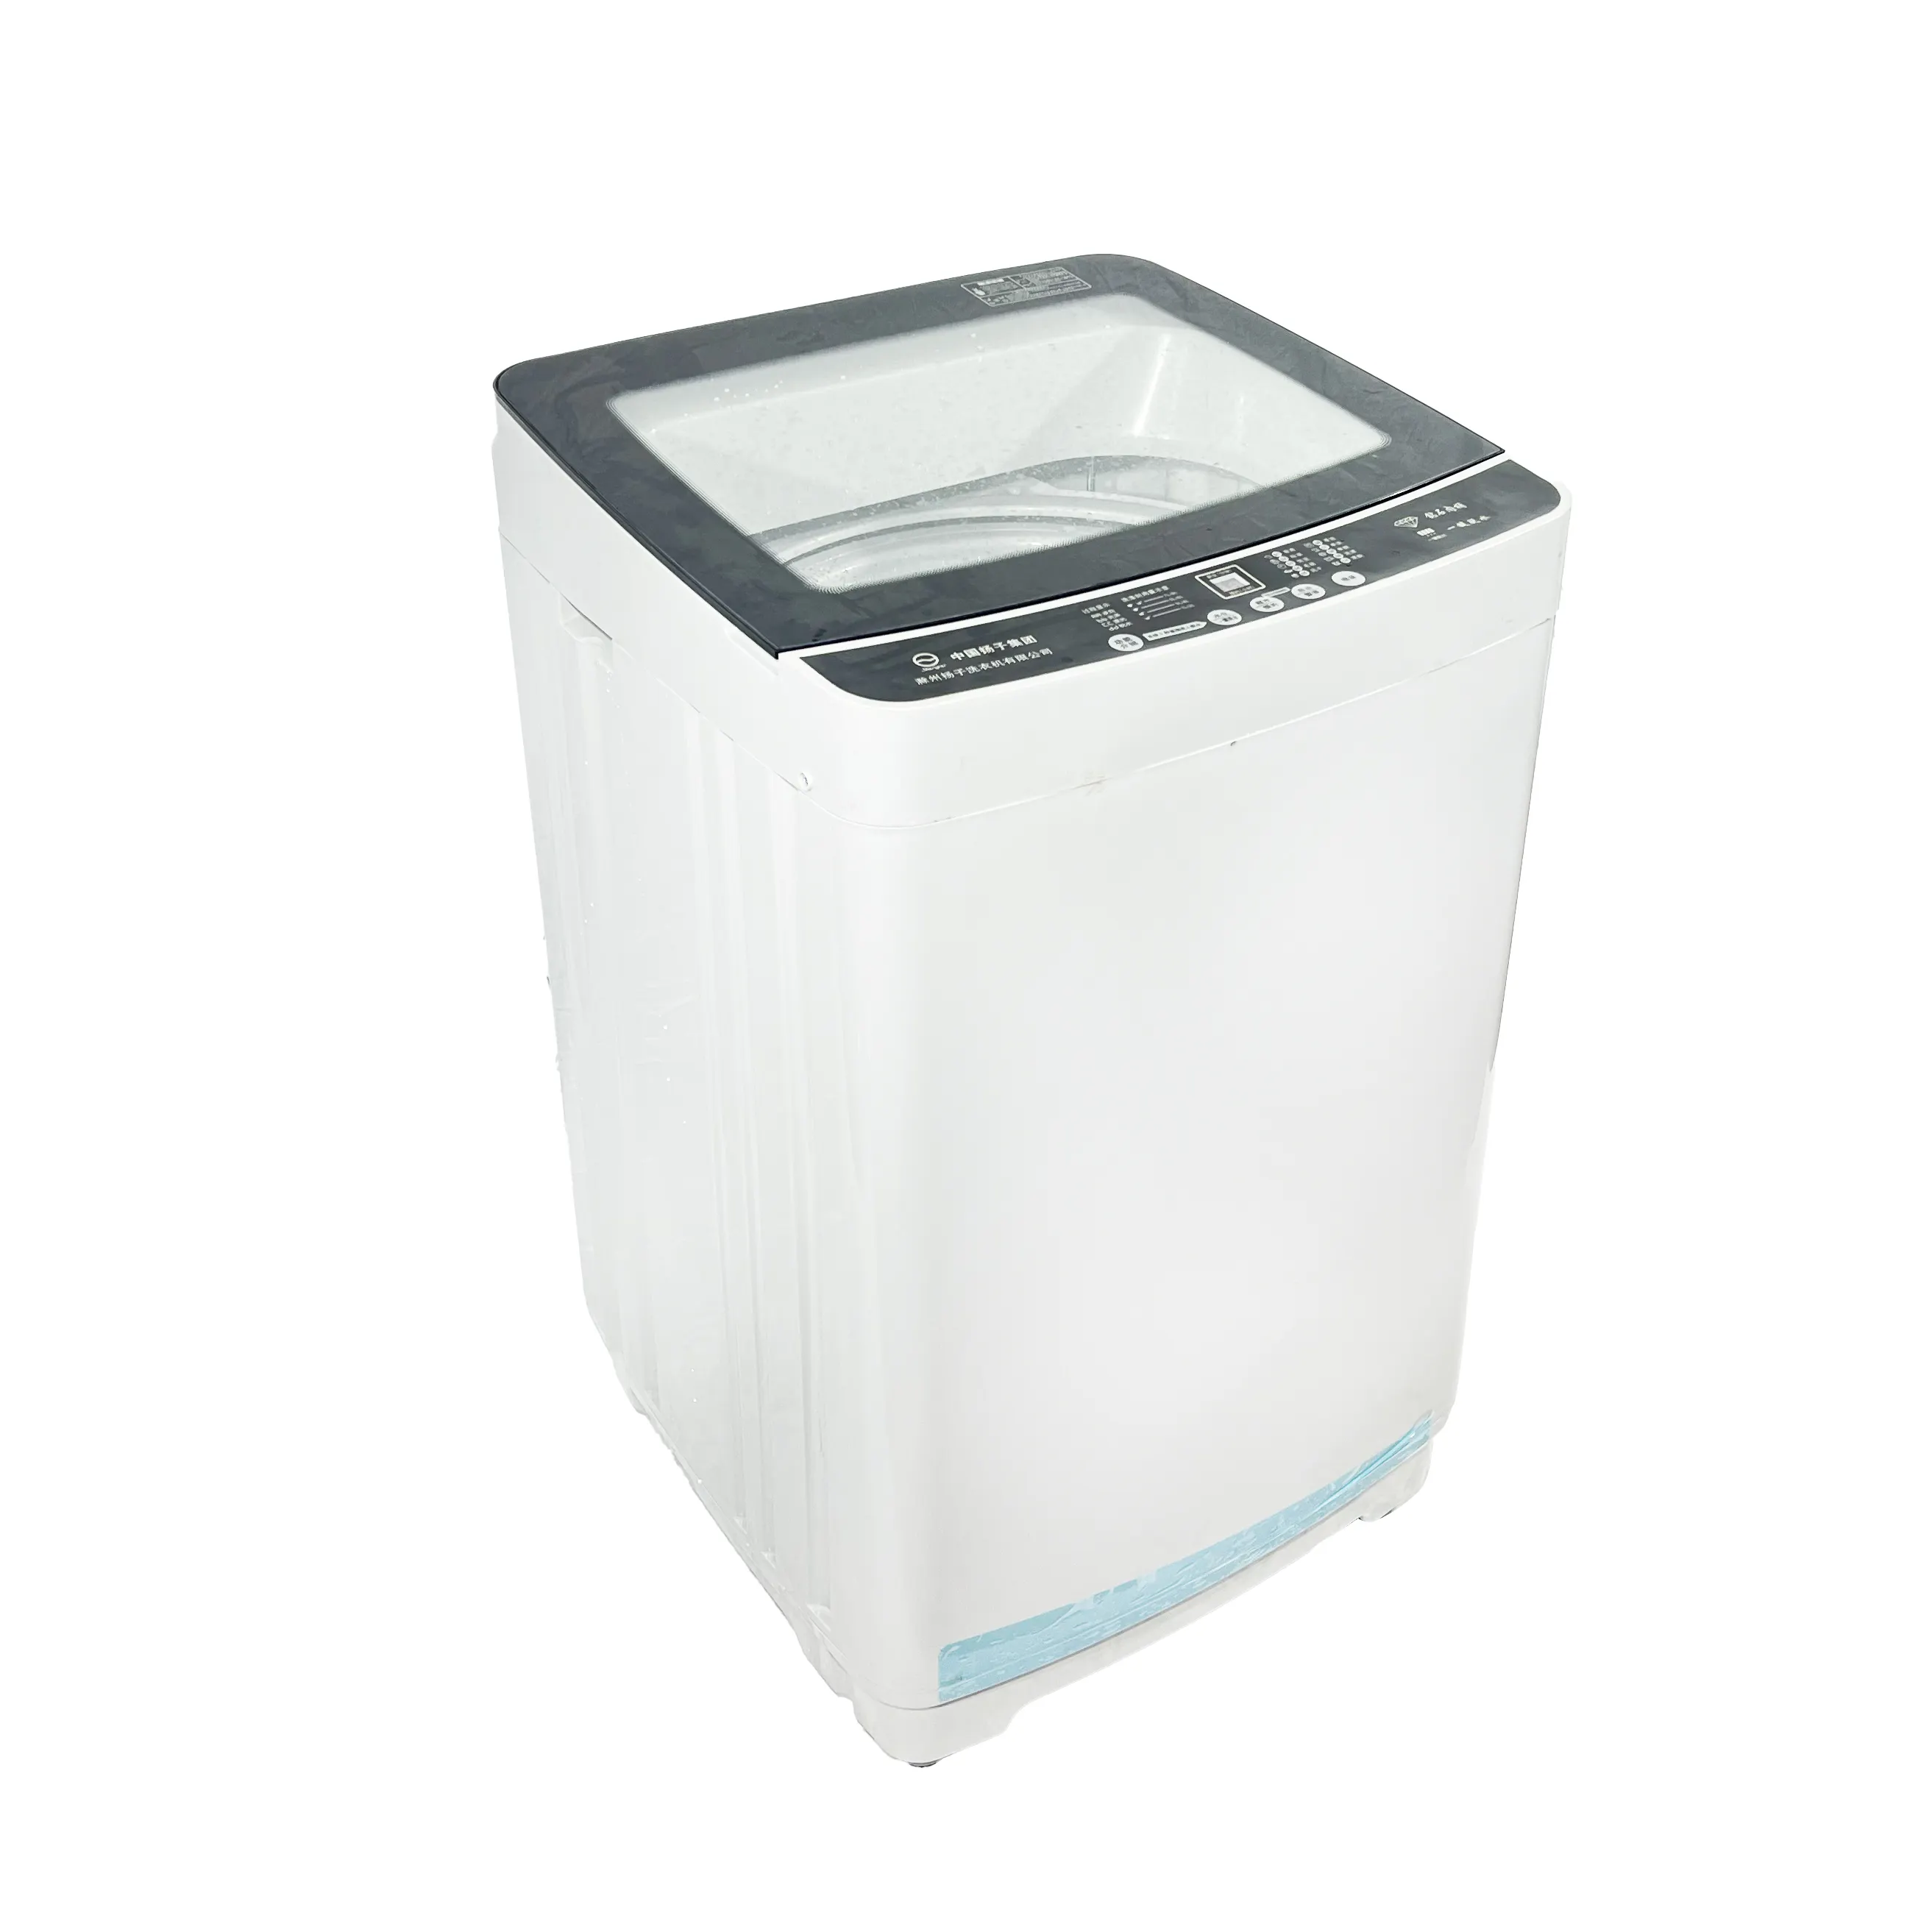 Banheira automática de lavagem com tampa de vidro, máquina de lavar roupa para uso doméstico, capacidade de 10kg, 2024-30,5kg